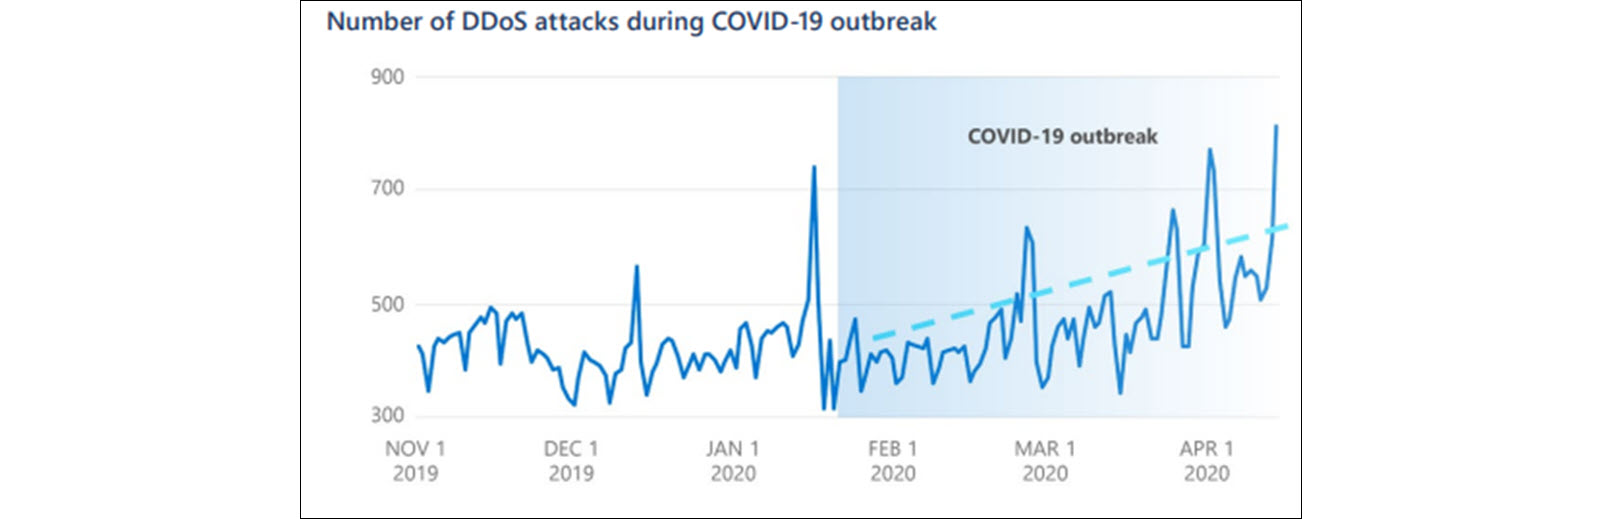 Imagem. Evolução dos ataques do tipo DDoS durante a pandemia de COVID-19 (segundo fontes da Microsoft).